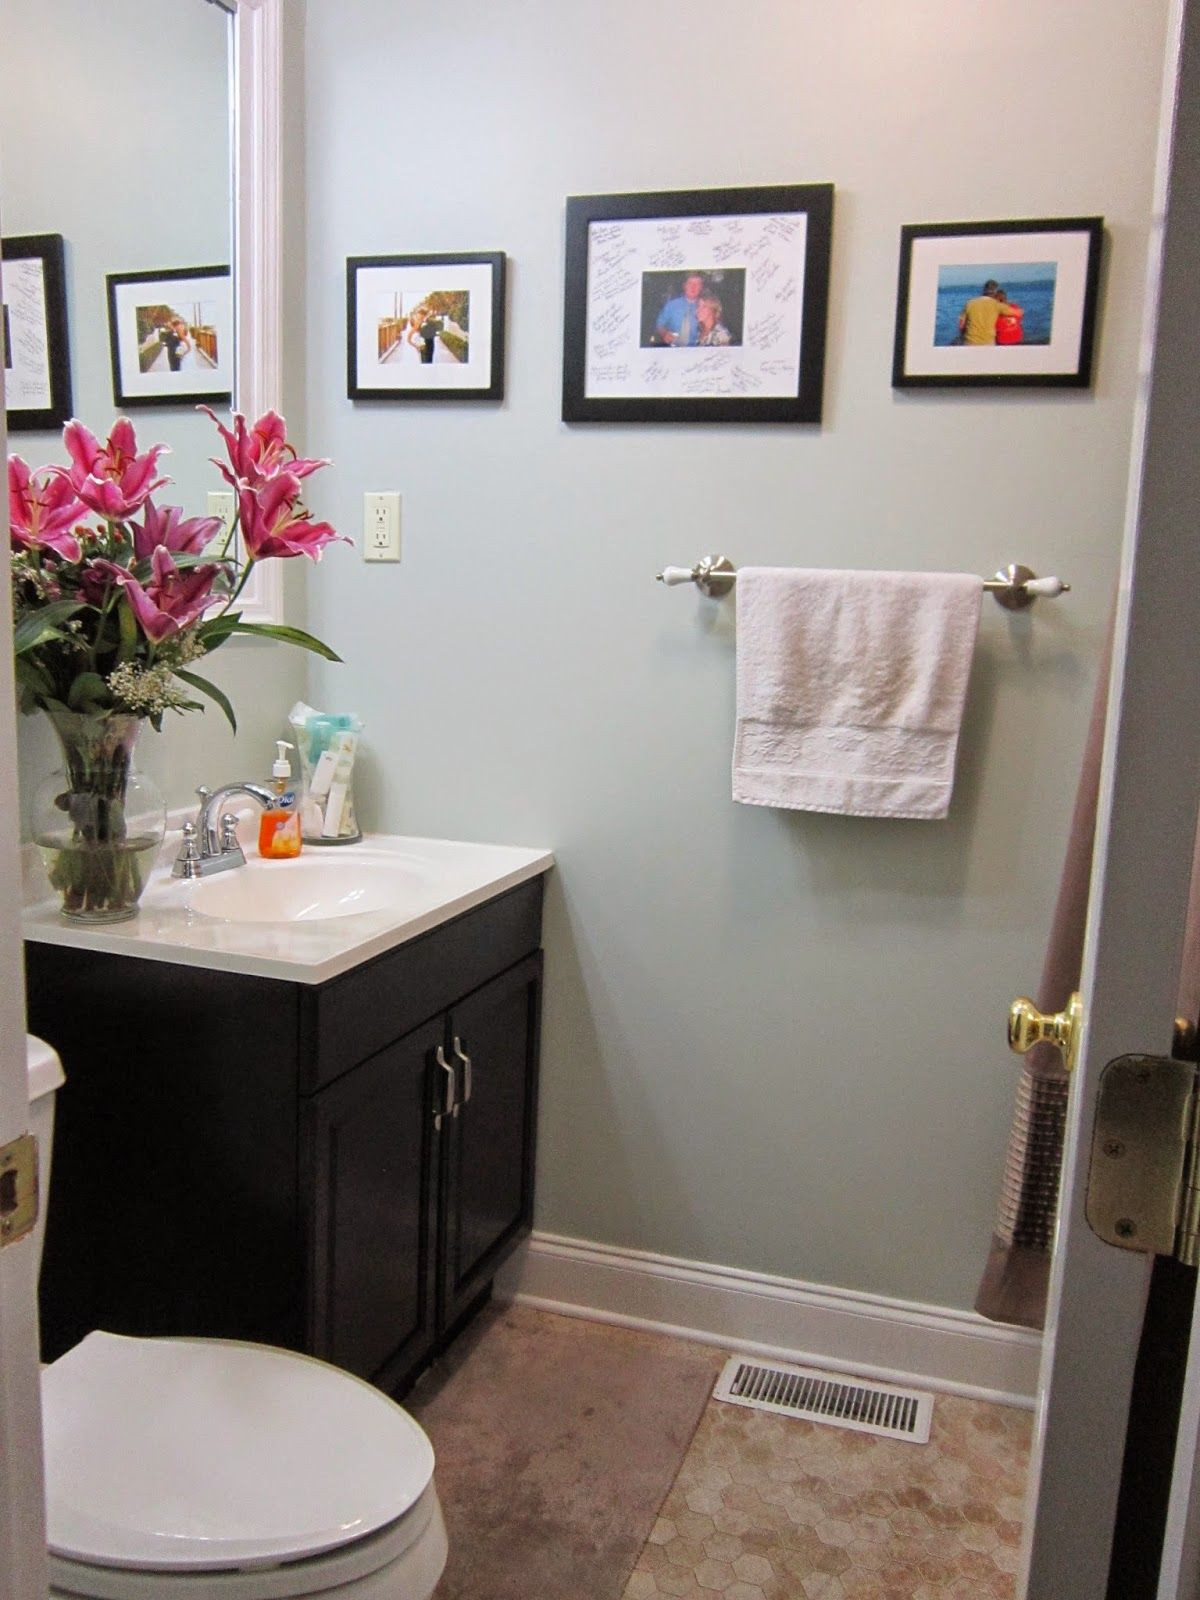 Bathroom Vanities Under $500
 Bathroom Renovation for Under $500